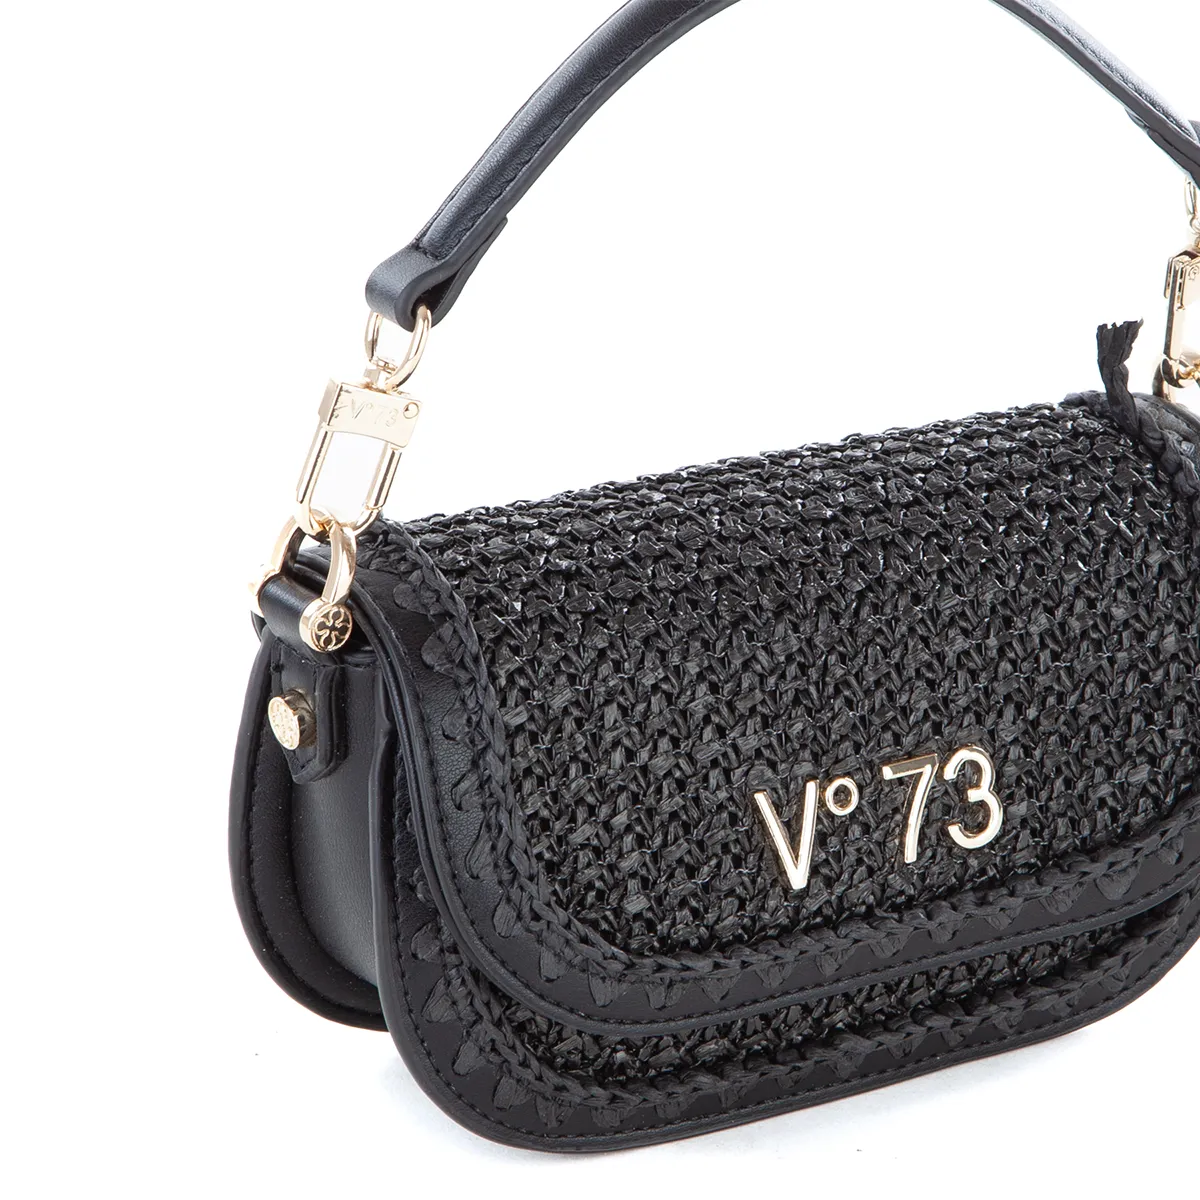 Vº73 bolso con solapa en rafia color negro